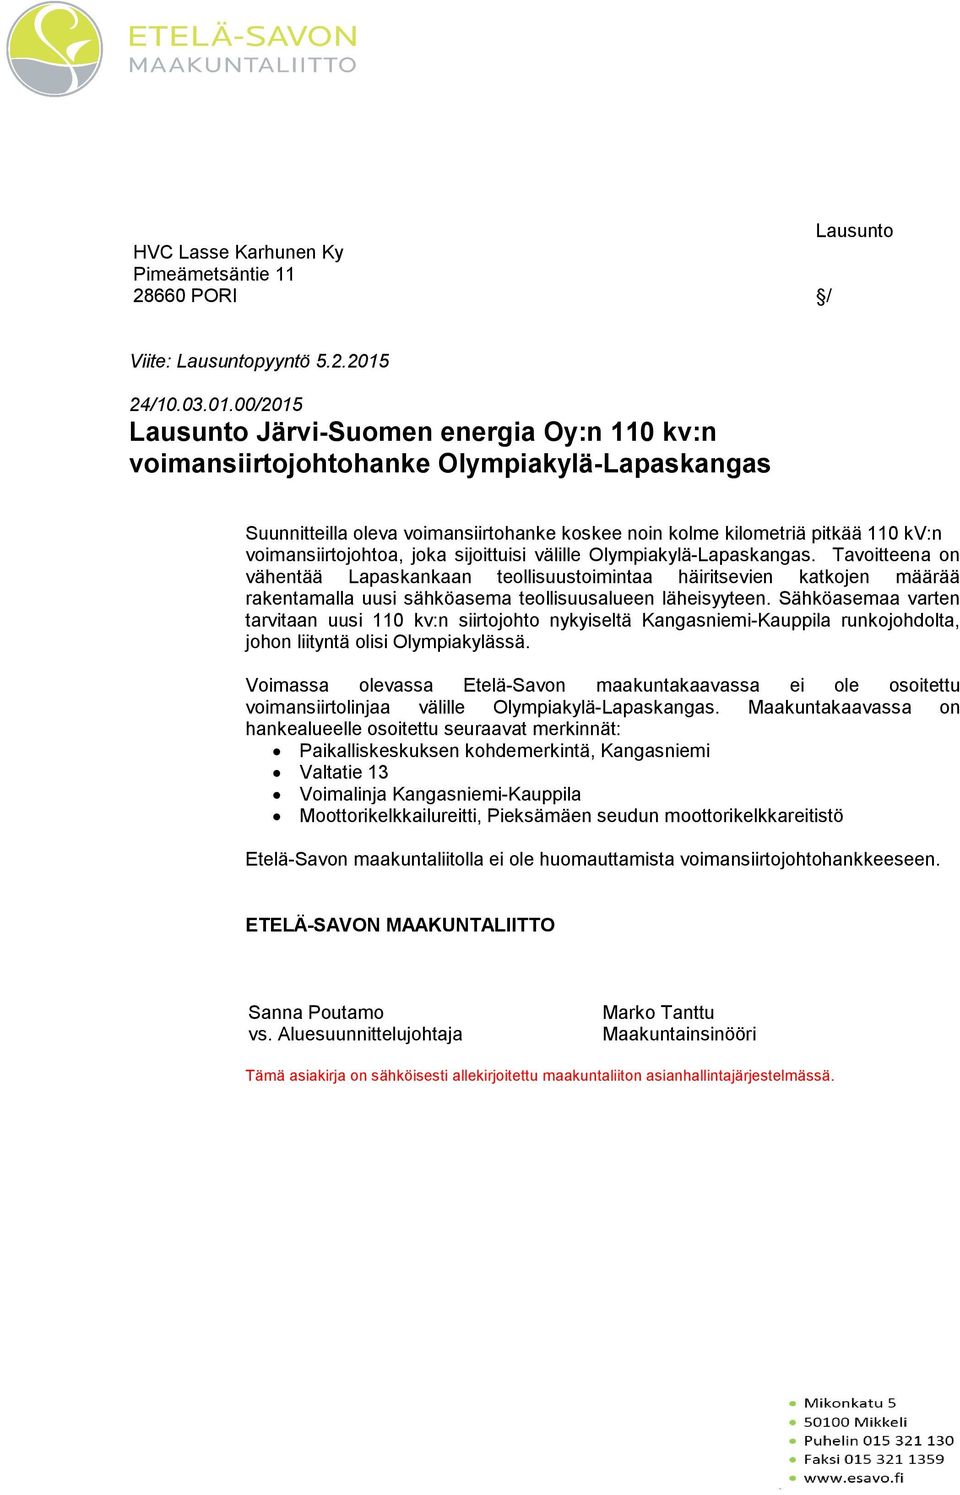 00/2015 Lausunto Järvi-Suomen energia Oy:n 110 kv:n voimansiirtojohtohanke Olympiakylä-Lapaskangas Suunnitteilla oleva voimansiirtohanke koskee noin kolme kilometriä pitkää 110 kv:n